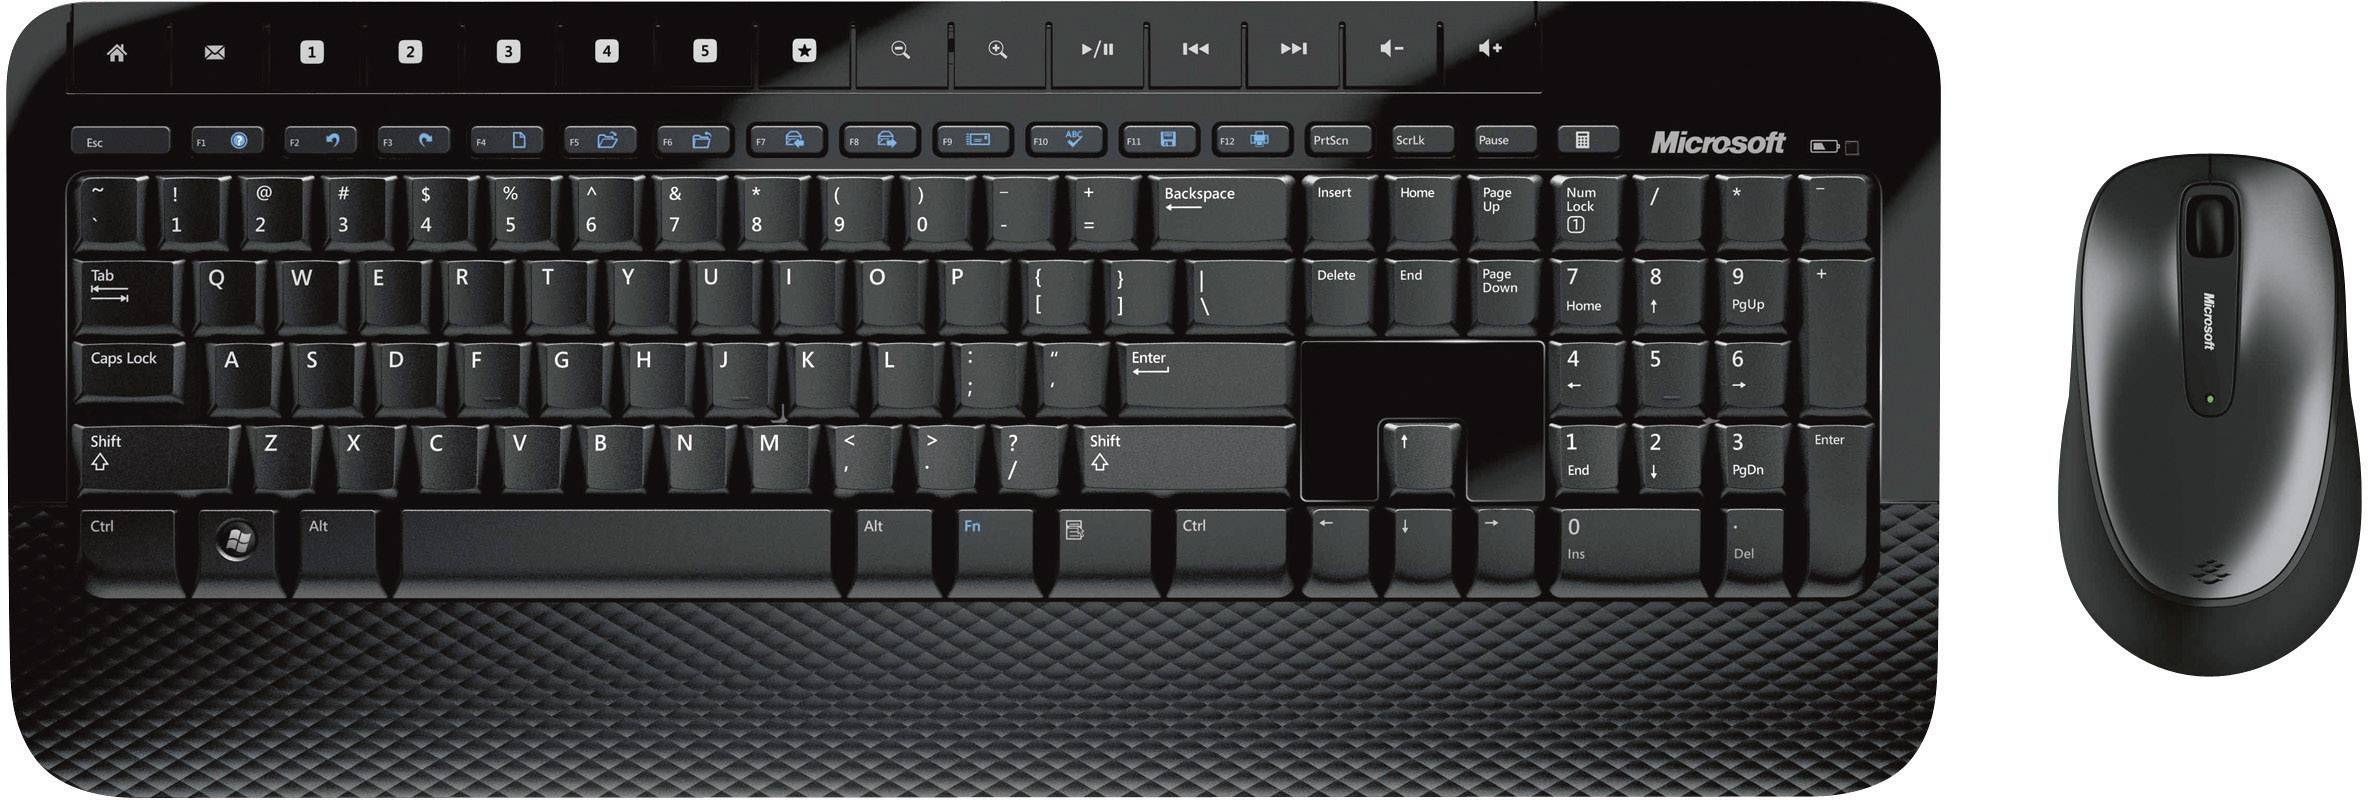 wireless keyboard 2000